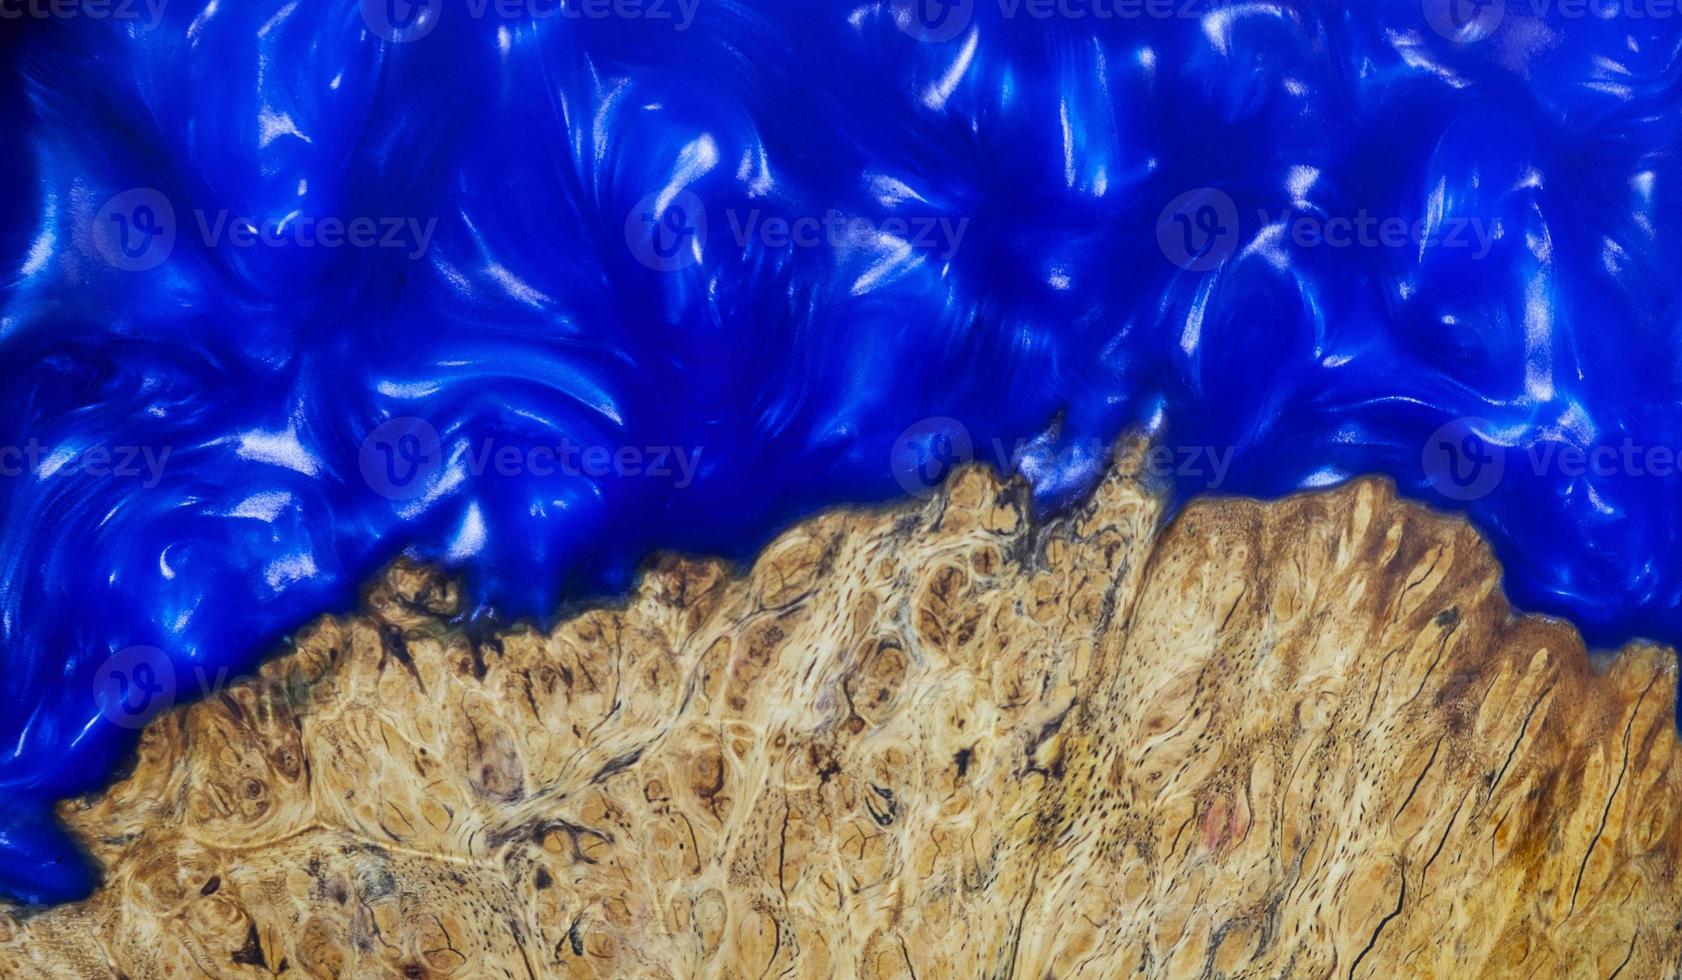 Fundición de resina epoxi padauk burl textura de fondo de madera foto